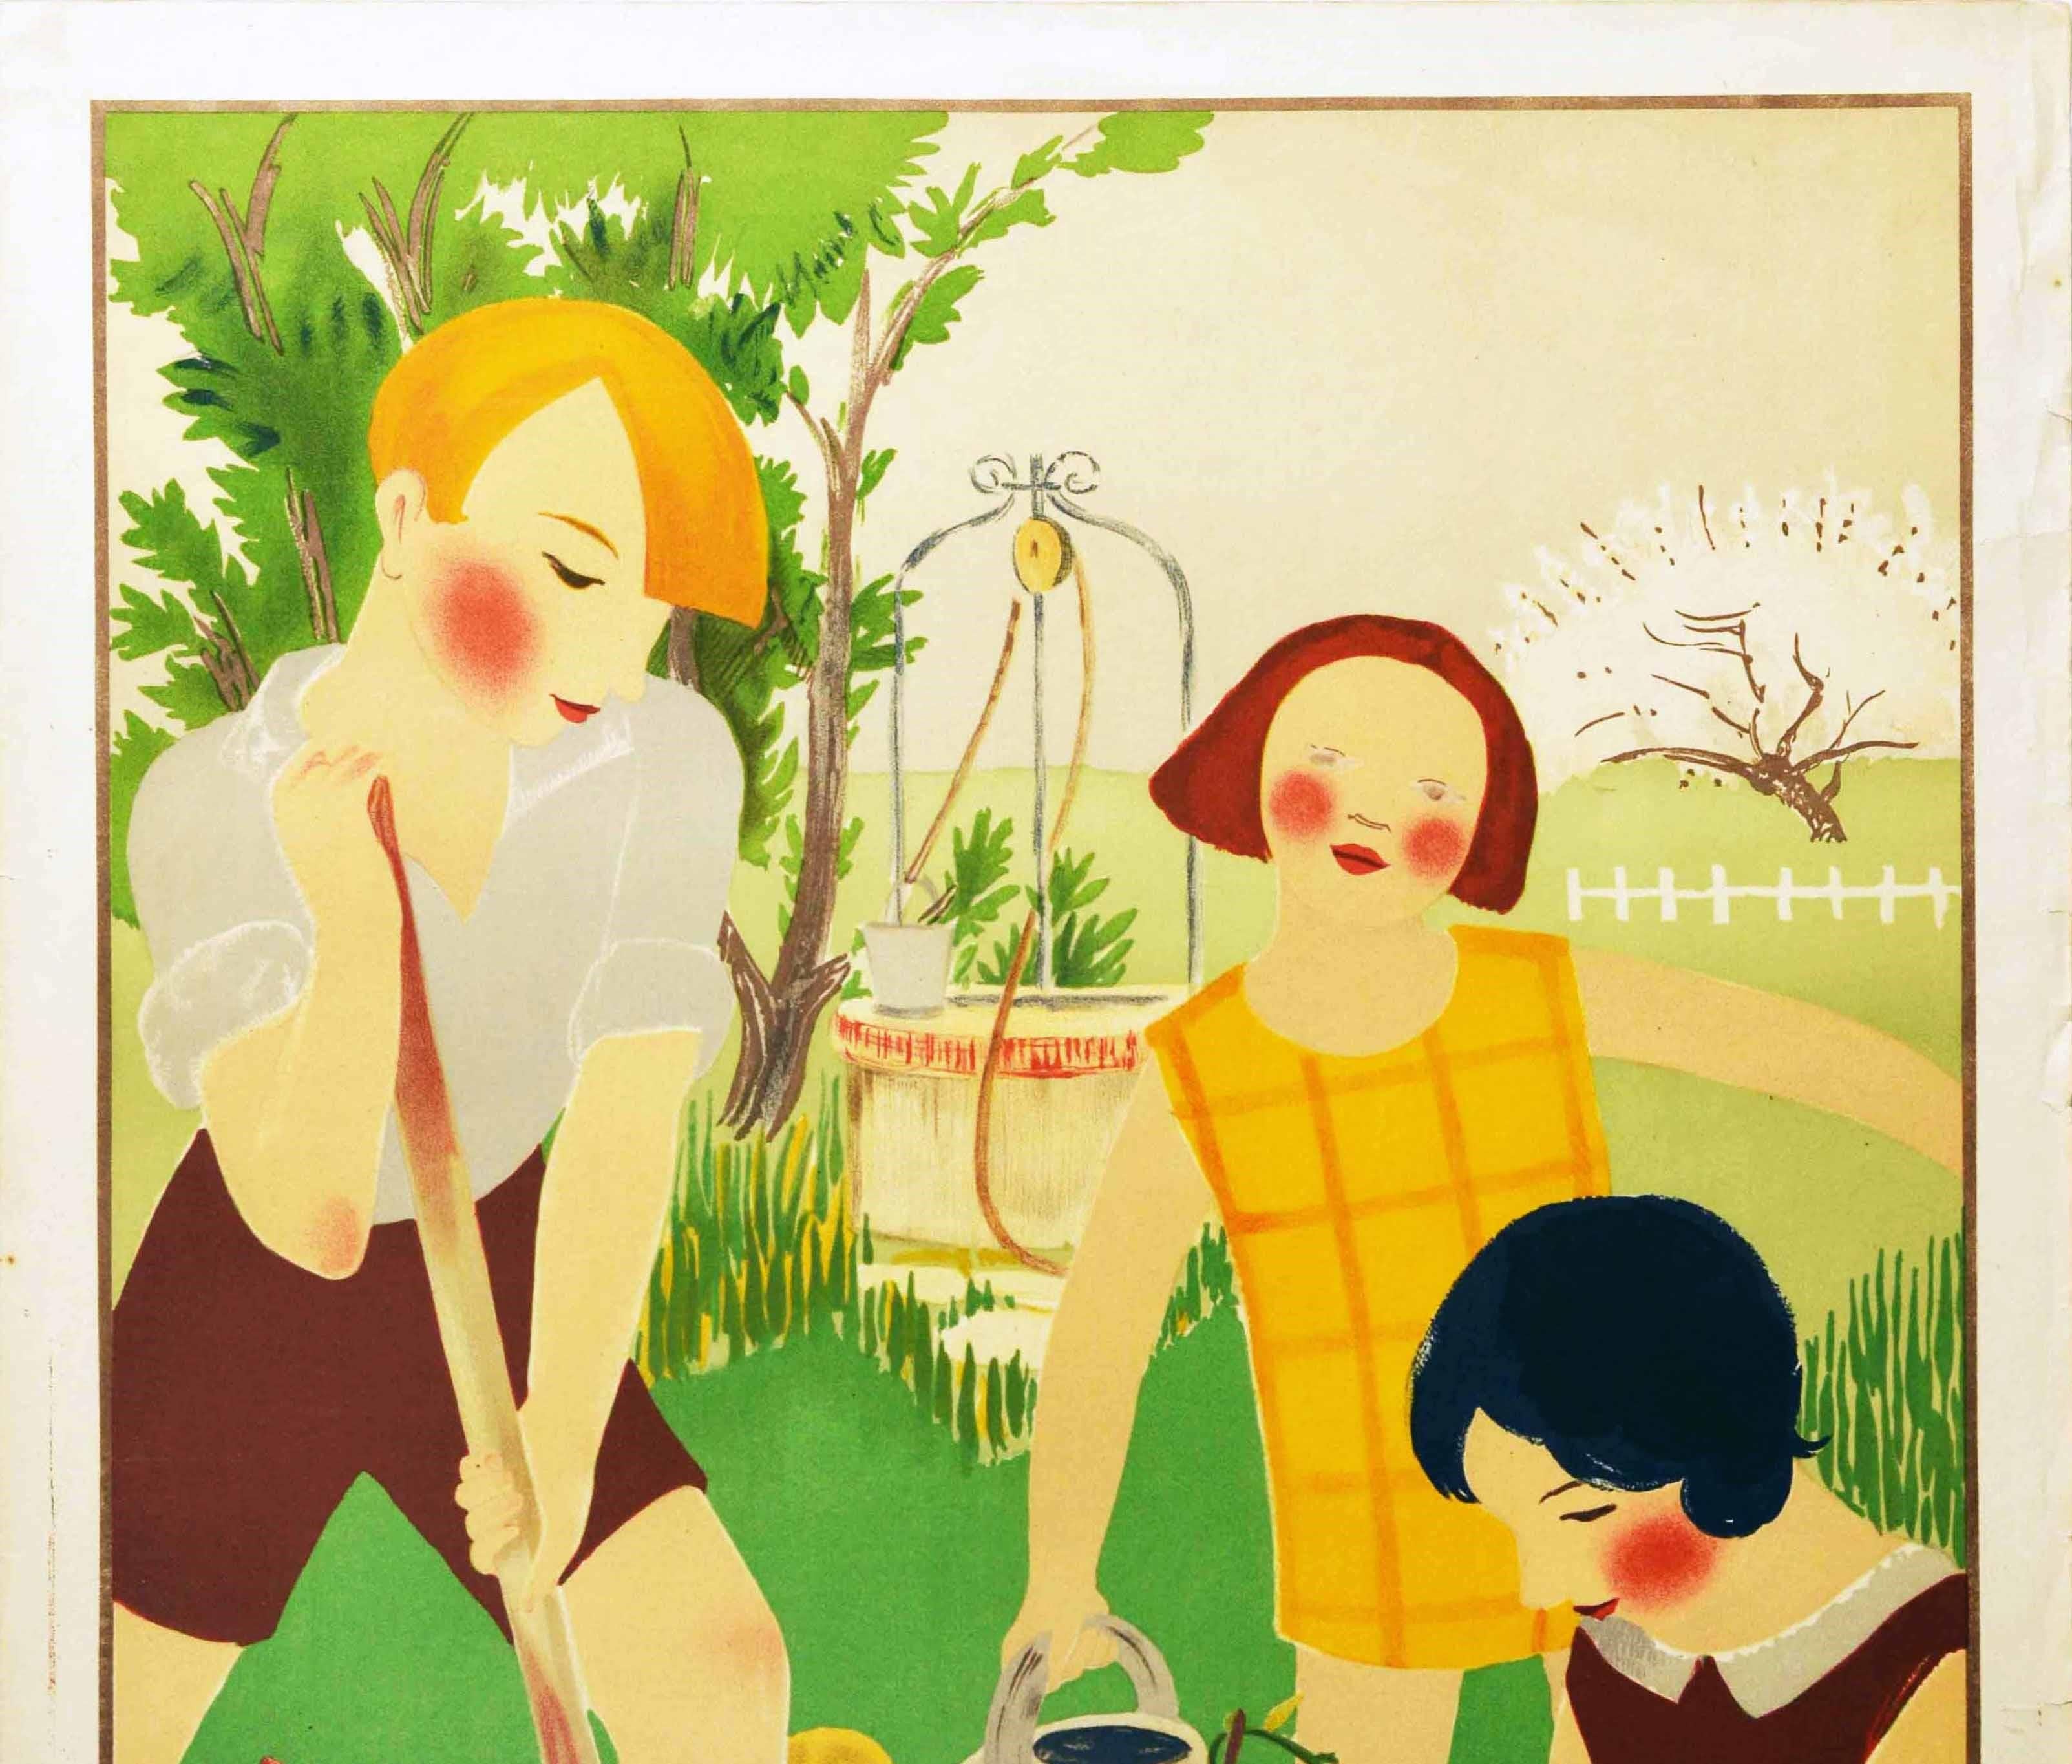 Affiche publicitaire Art déco vintage originale intitulée School Art Competition / Concours de L'art à l'école présentant une illustration colorée d'un professeur et d'écoliers en train de jardiner - le garçon creuse avec une bêche tandis que le